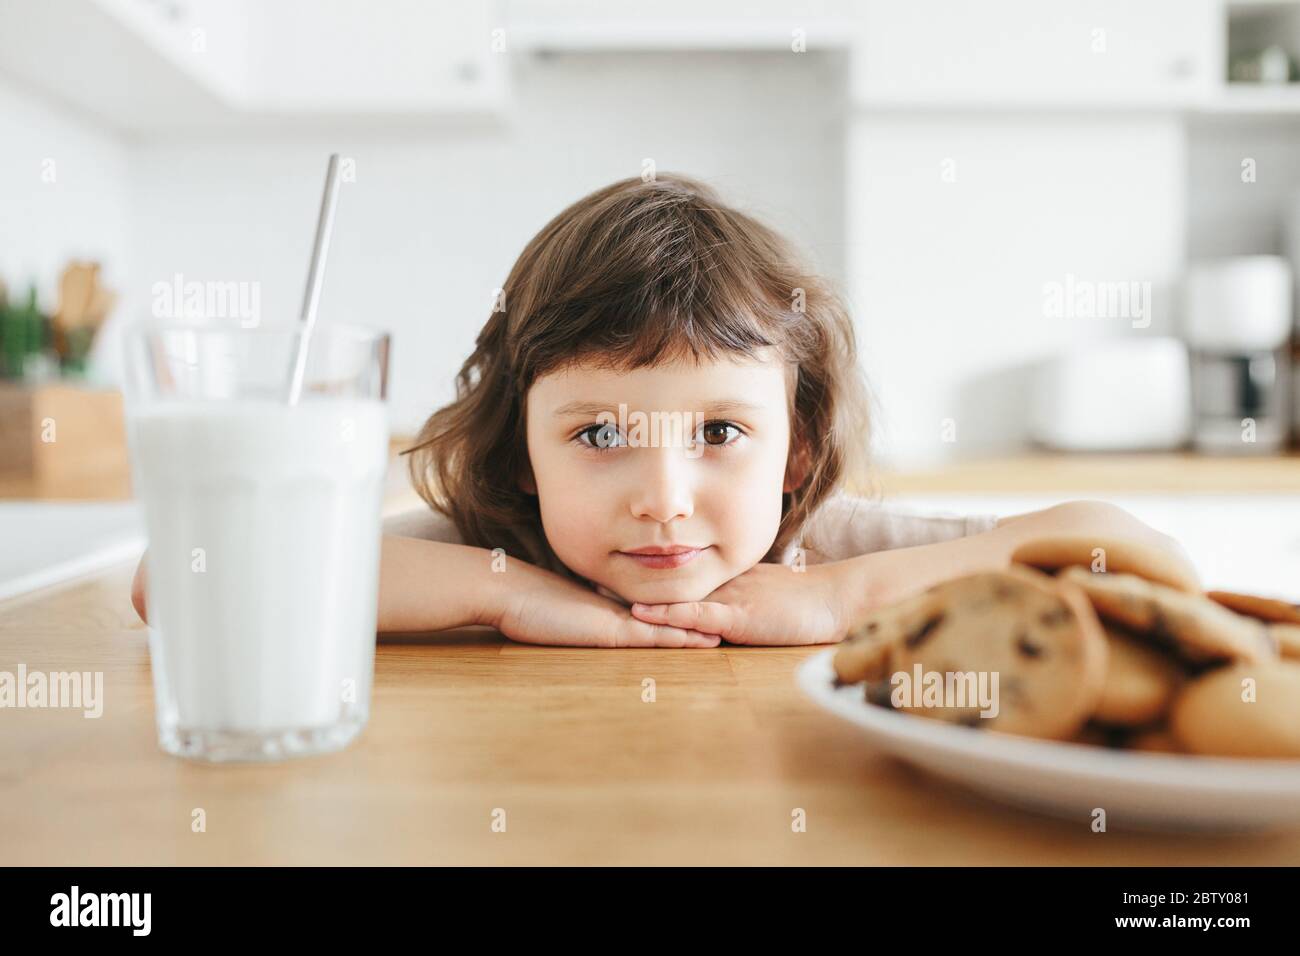 Une petite fille mignonne boit du lait avec de la paille d'acier en verre et mange des biscuits assis à la table de la cuisine. Réduire l'utilisation de plastique chez les enfants Banque D'Images